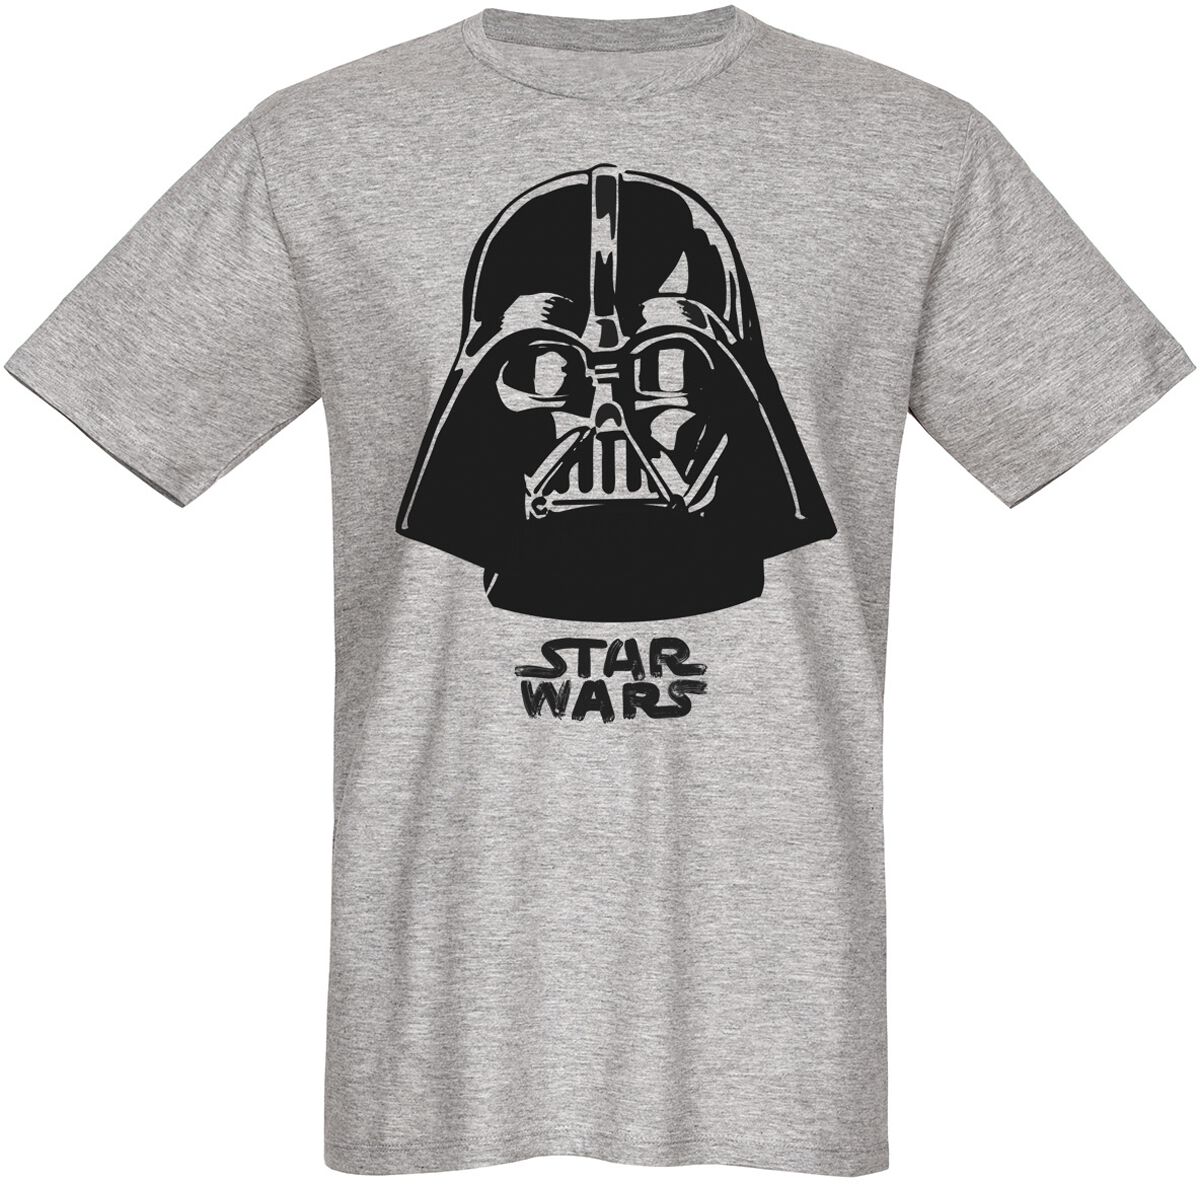 Star Wars T-Shirt - Darth Vader - The Boss - S bis 3XL - für Männer - Größe XL - grau  - Lizenzierter Fanartikel